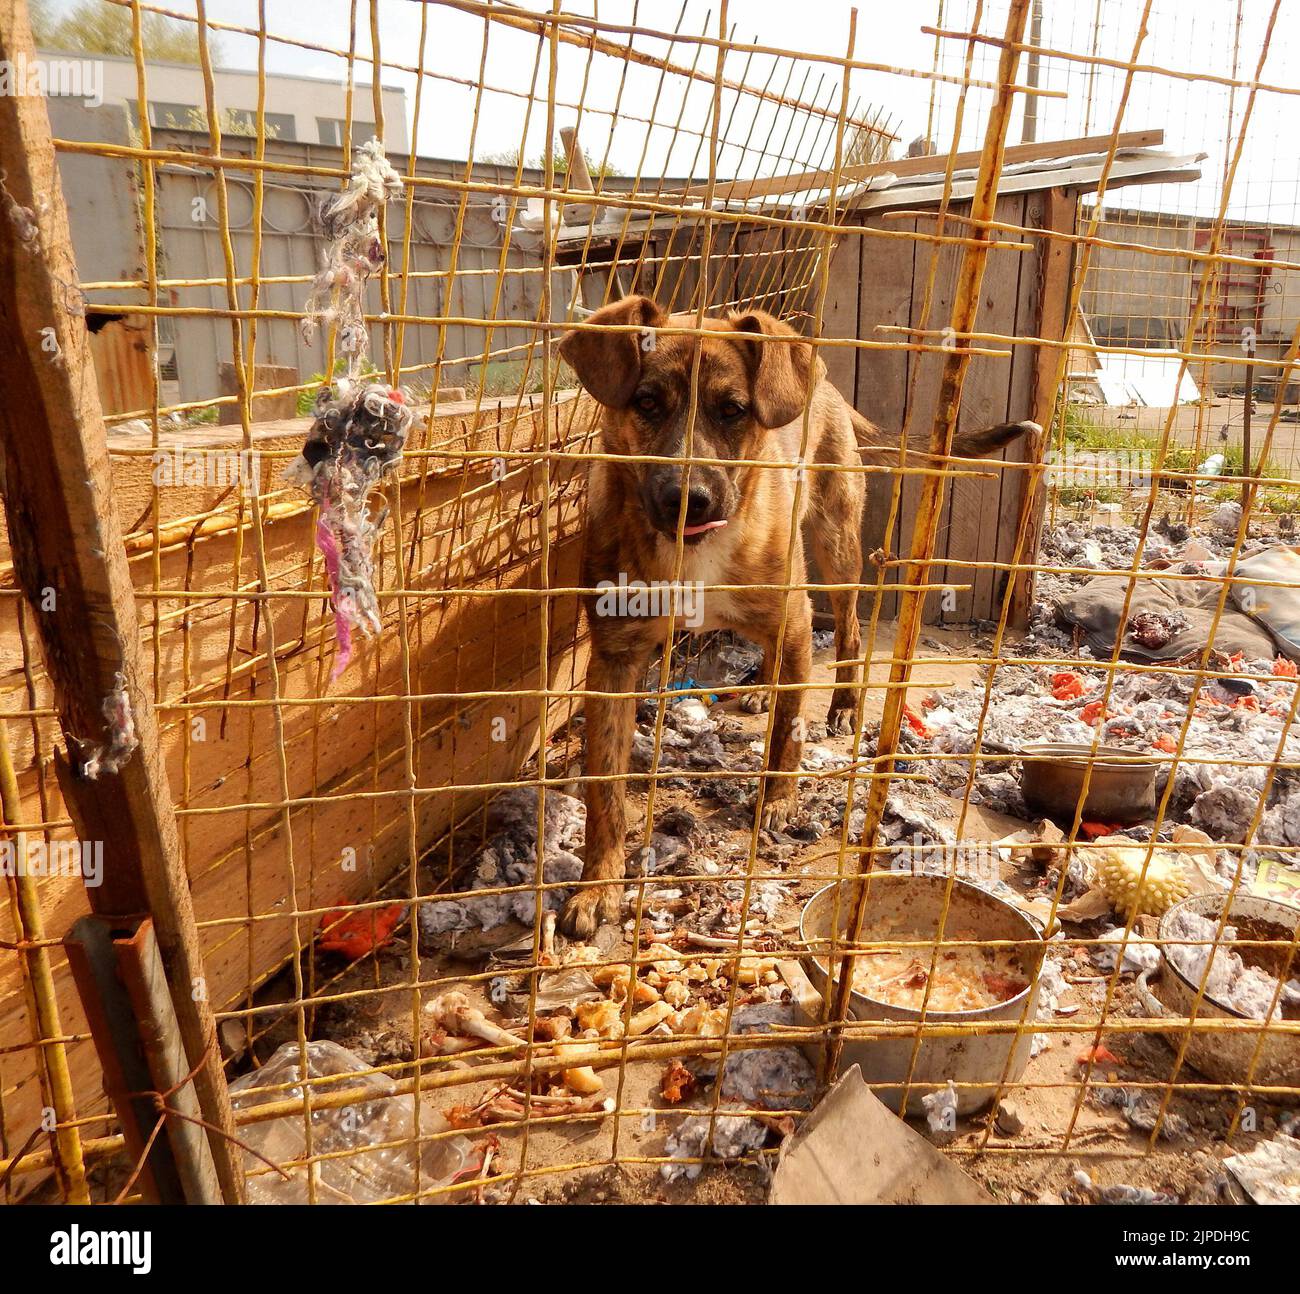 Adozione PET. Cane senza casa in riparo animale in cattive condizioni di vita Foto Stock